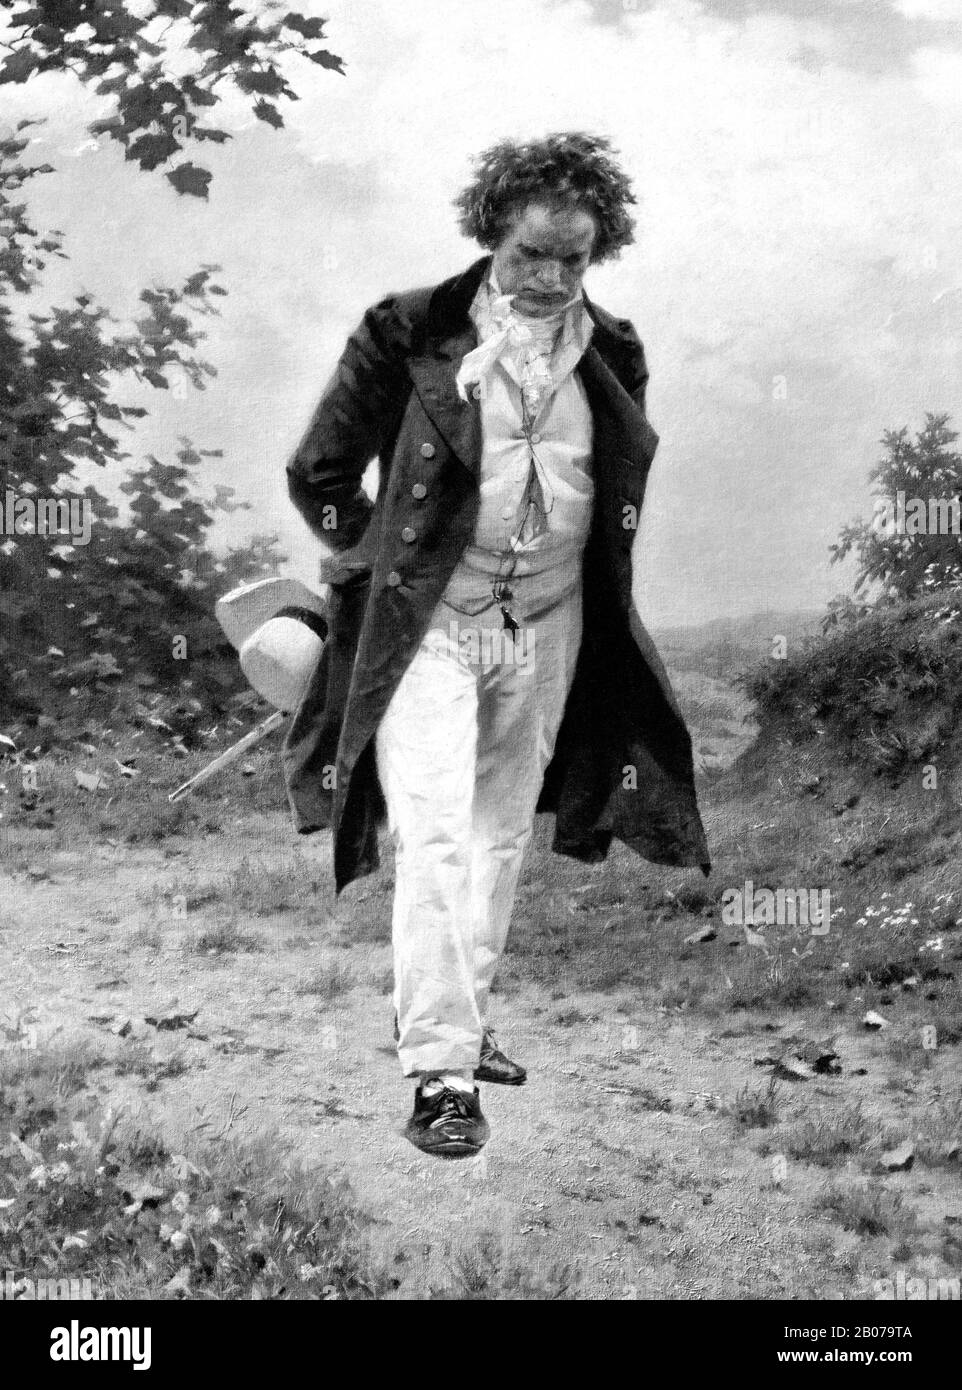 Image d'époque représentant le compositeur et pianiste allemand Ludwig van Beethoven (1770 – 1827) en pleine nature. Détail d'un imprimé vers 1910 par la société photographique de Berlin basé sur une peinture de Julius Schmid. Banque D'Images